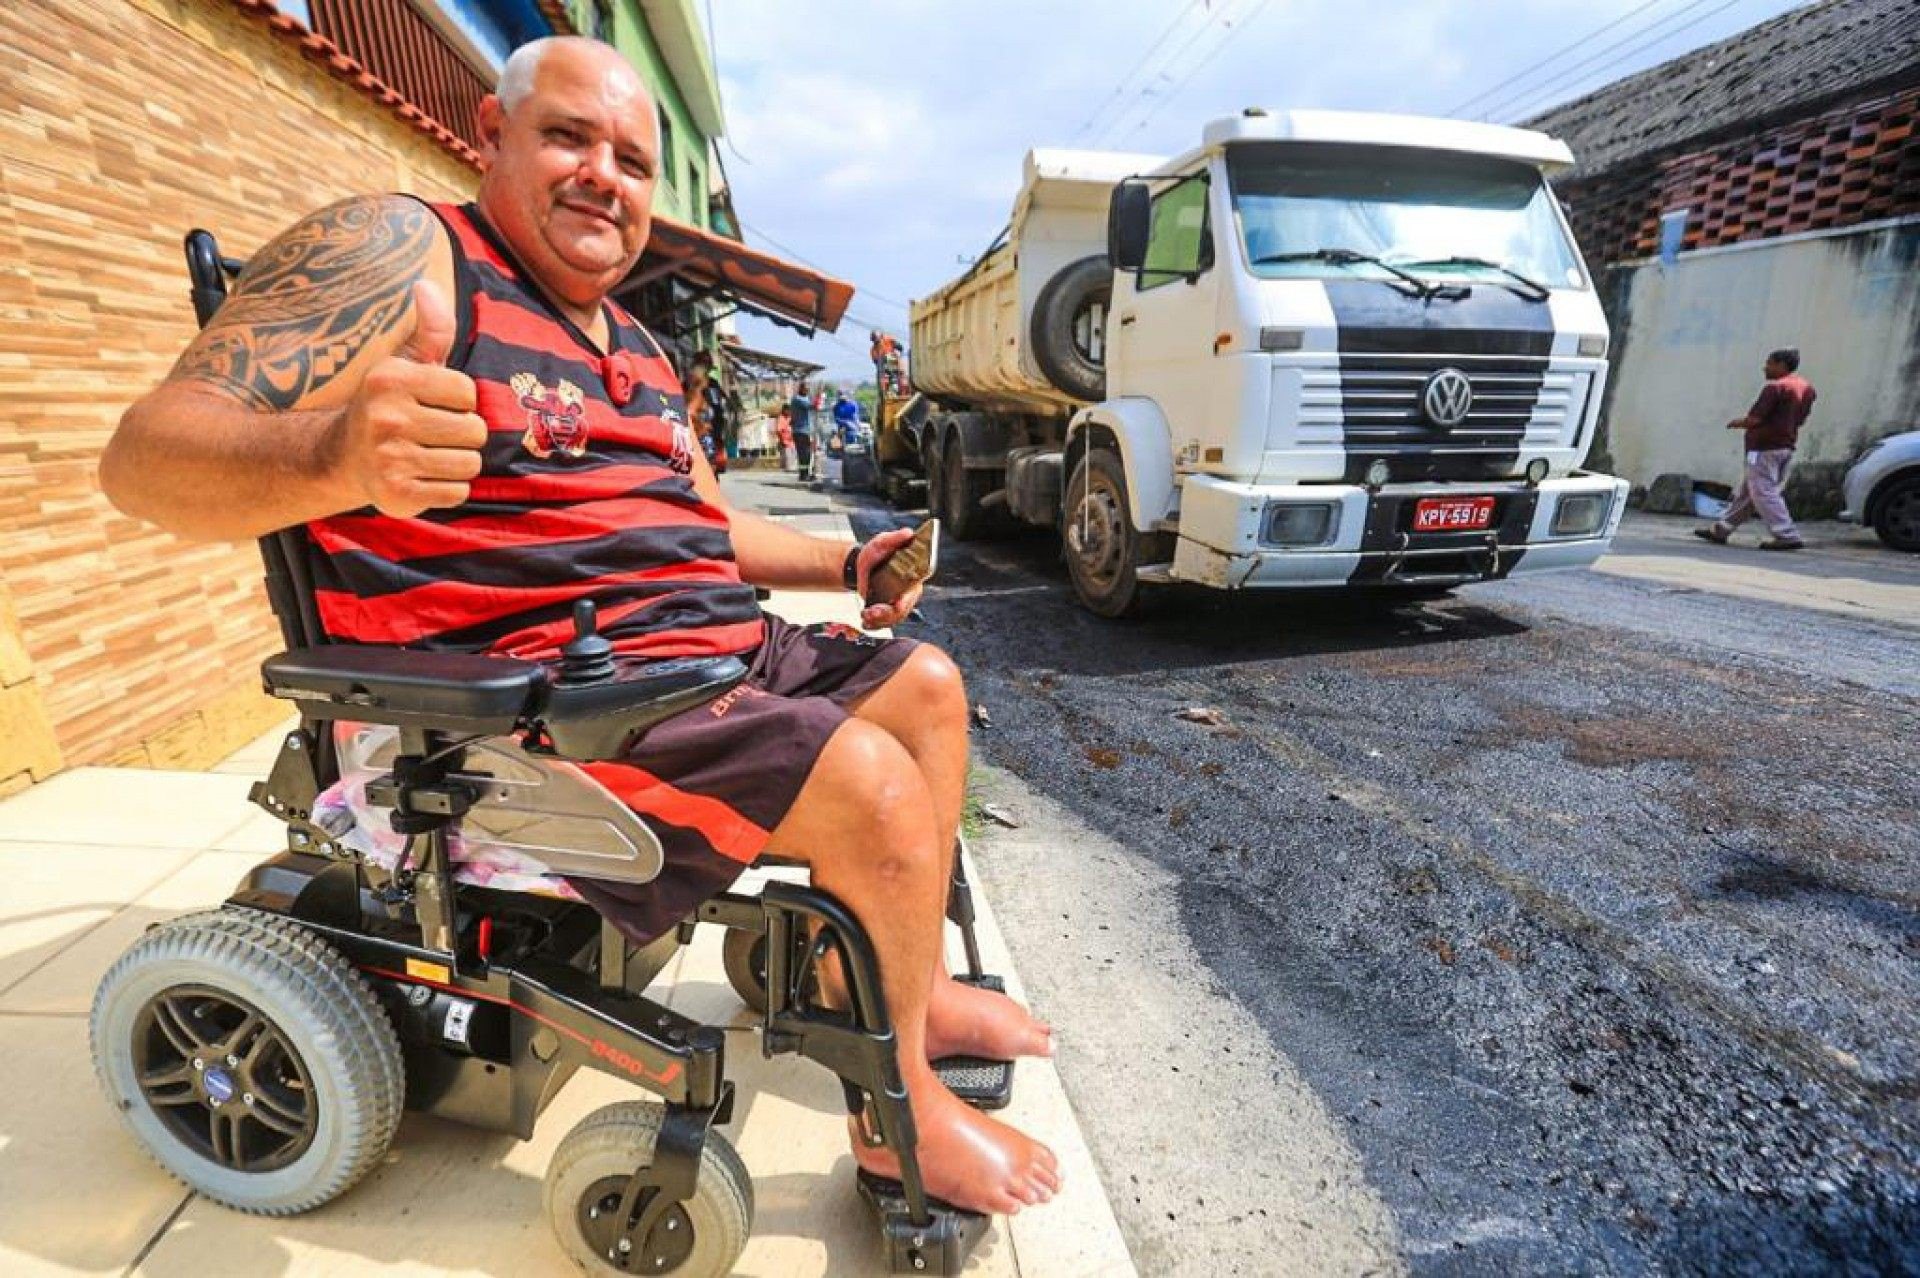 Cláudio Valério destacou que sua mobilidade será facilitada com a pavimentação das ruas - Rafael Barreto / PMBR